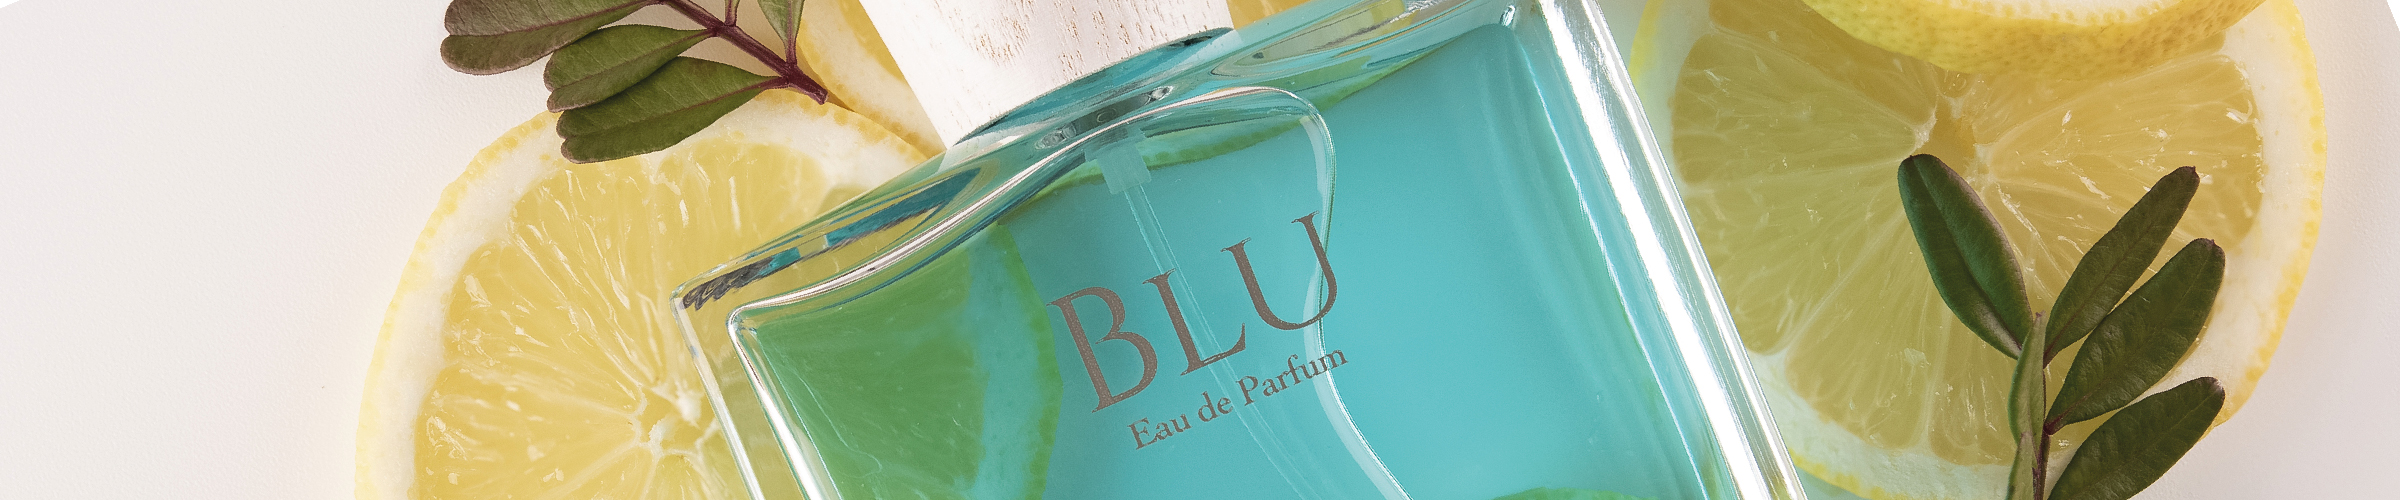 Eau de Parfum Blu 50 ml Acqua degli Dei Calabria